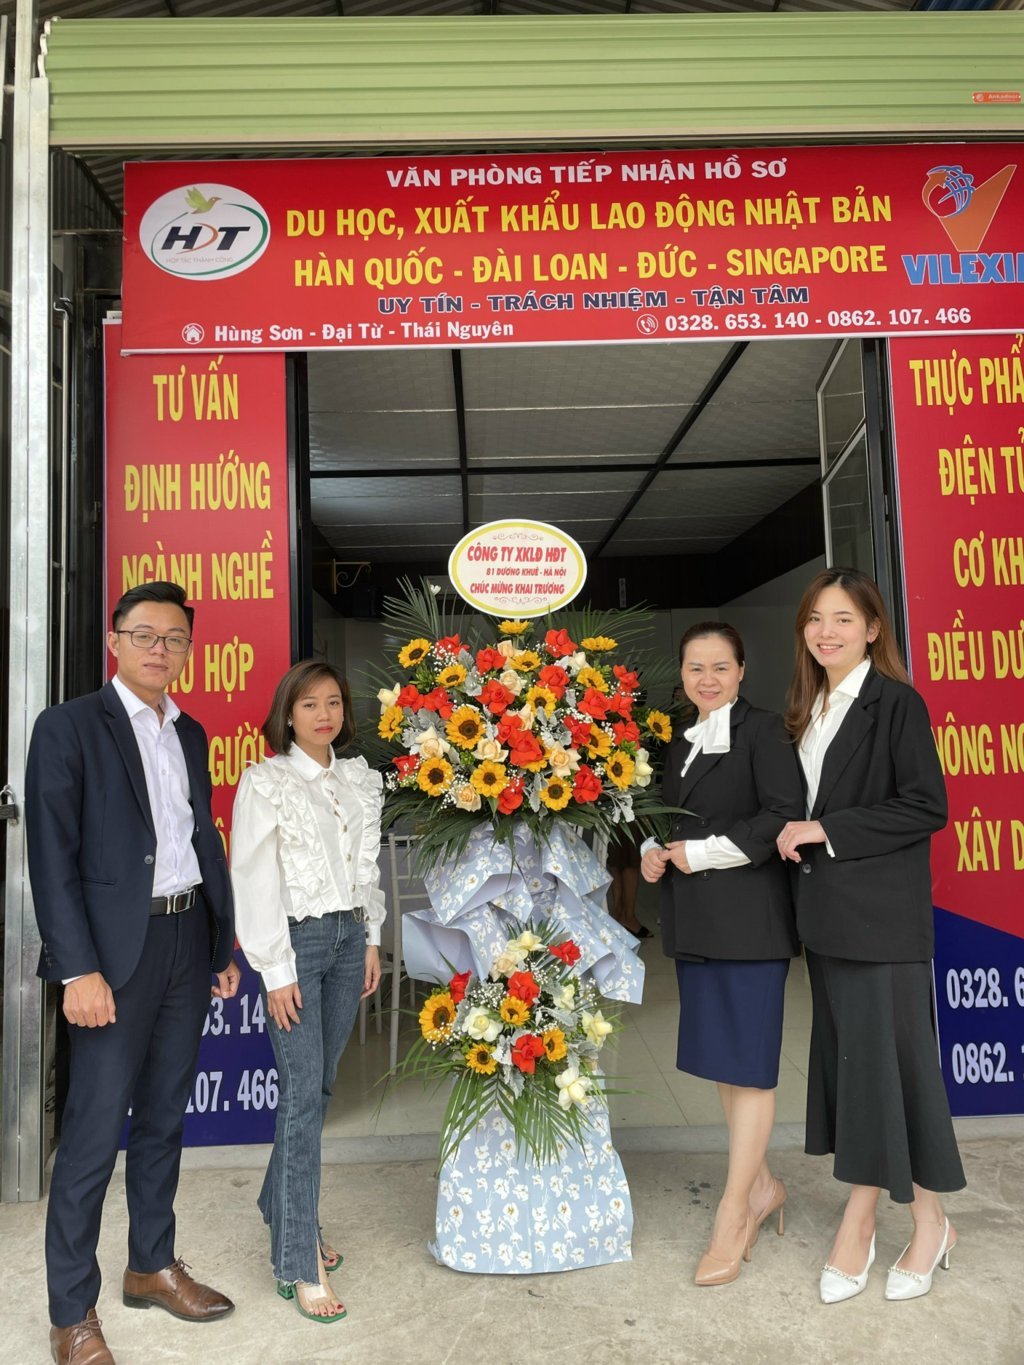 Văn phòng đại diện tại Thái Nguyên của công ty HDT có vị trí thuận lợi, đáp ứng mọi nhu cầu cần được hỗ trợ, giải đáp thắc mắc về XKLĐ và du học của mọi đối tượng.